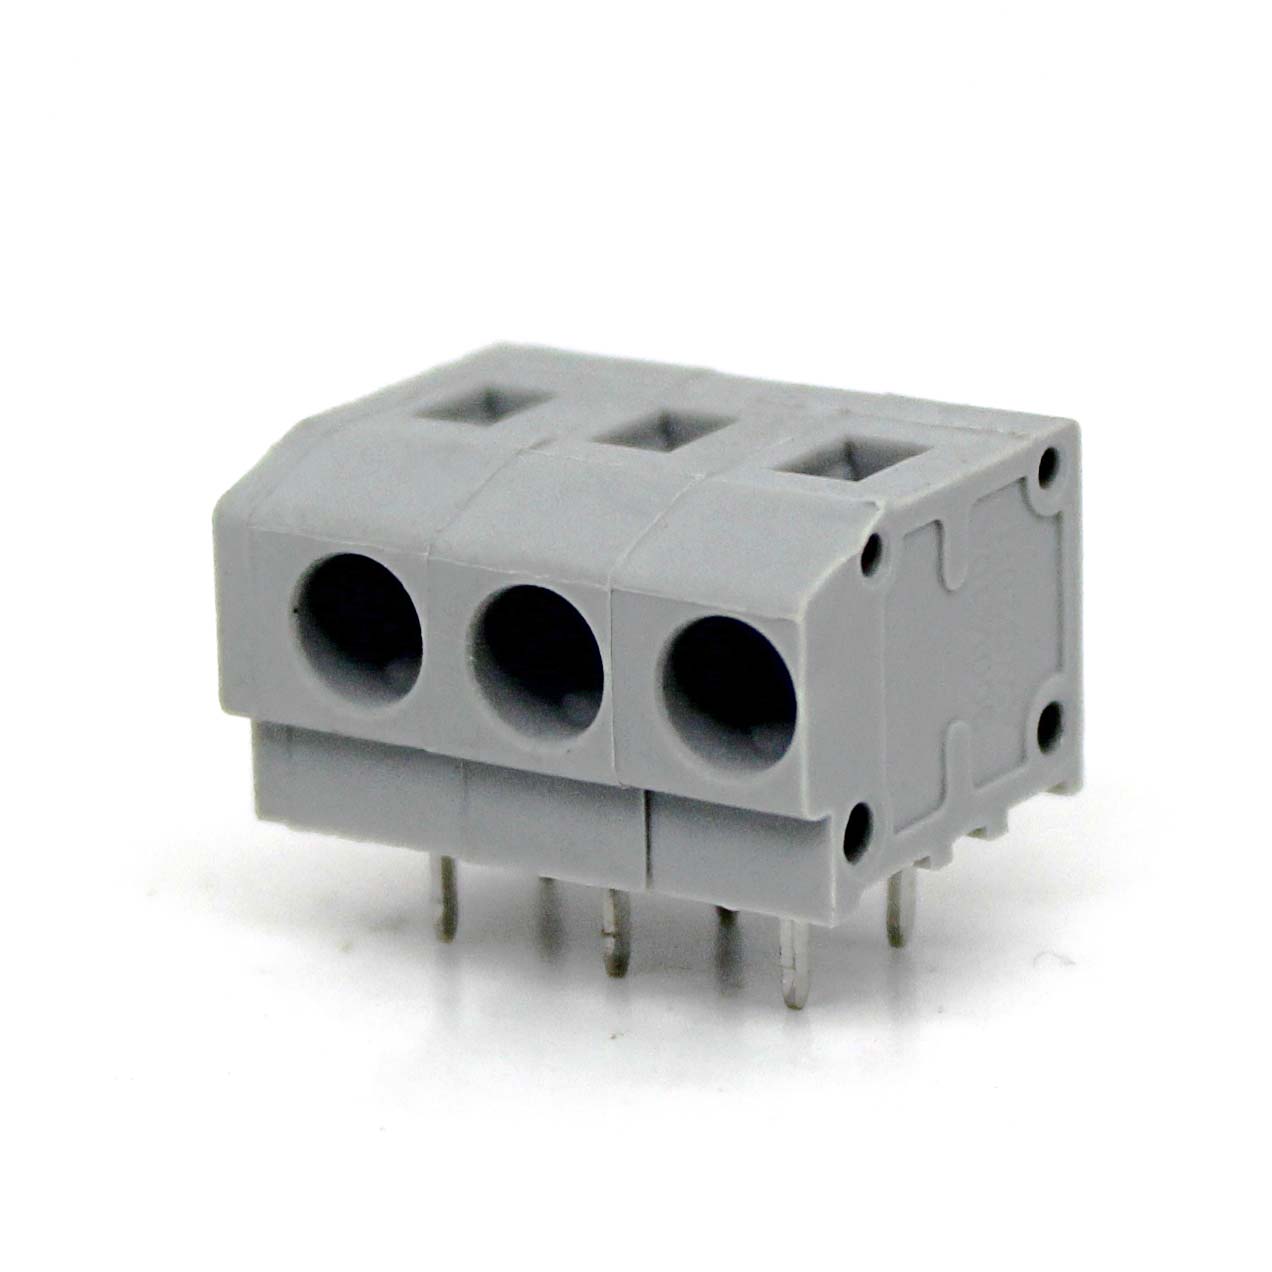 适配器免螺丝接线端子灰色7.5MM连接器 FS1.5-XX-500-07